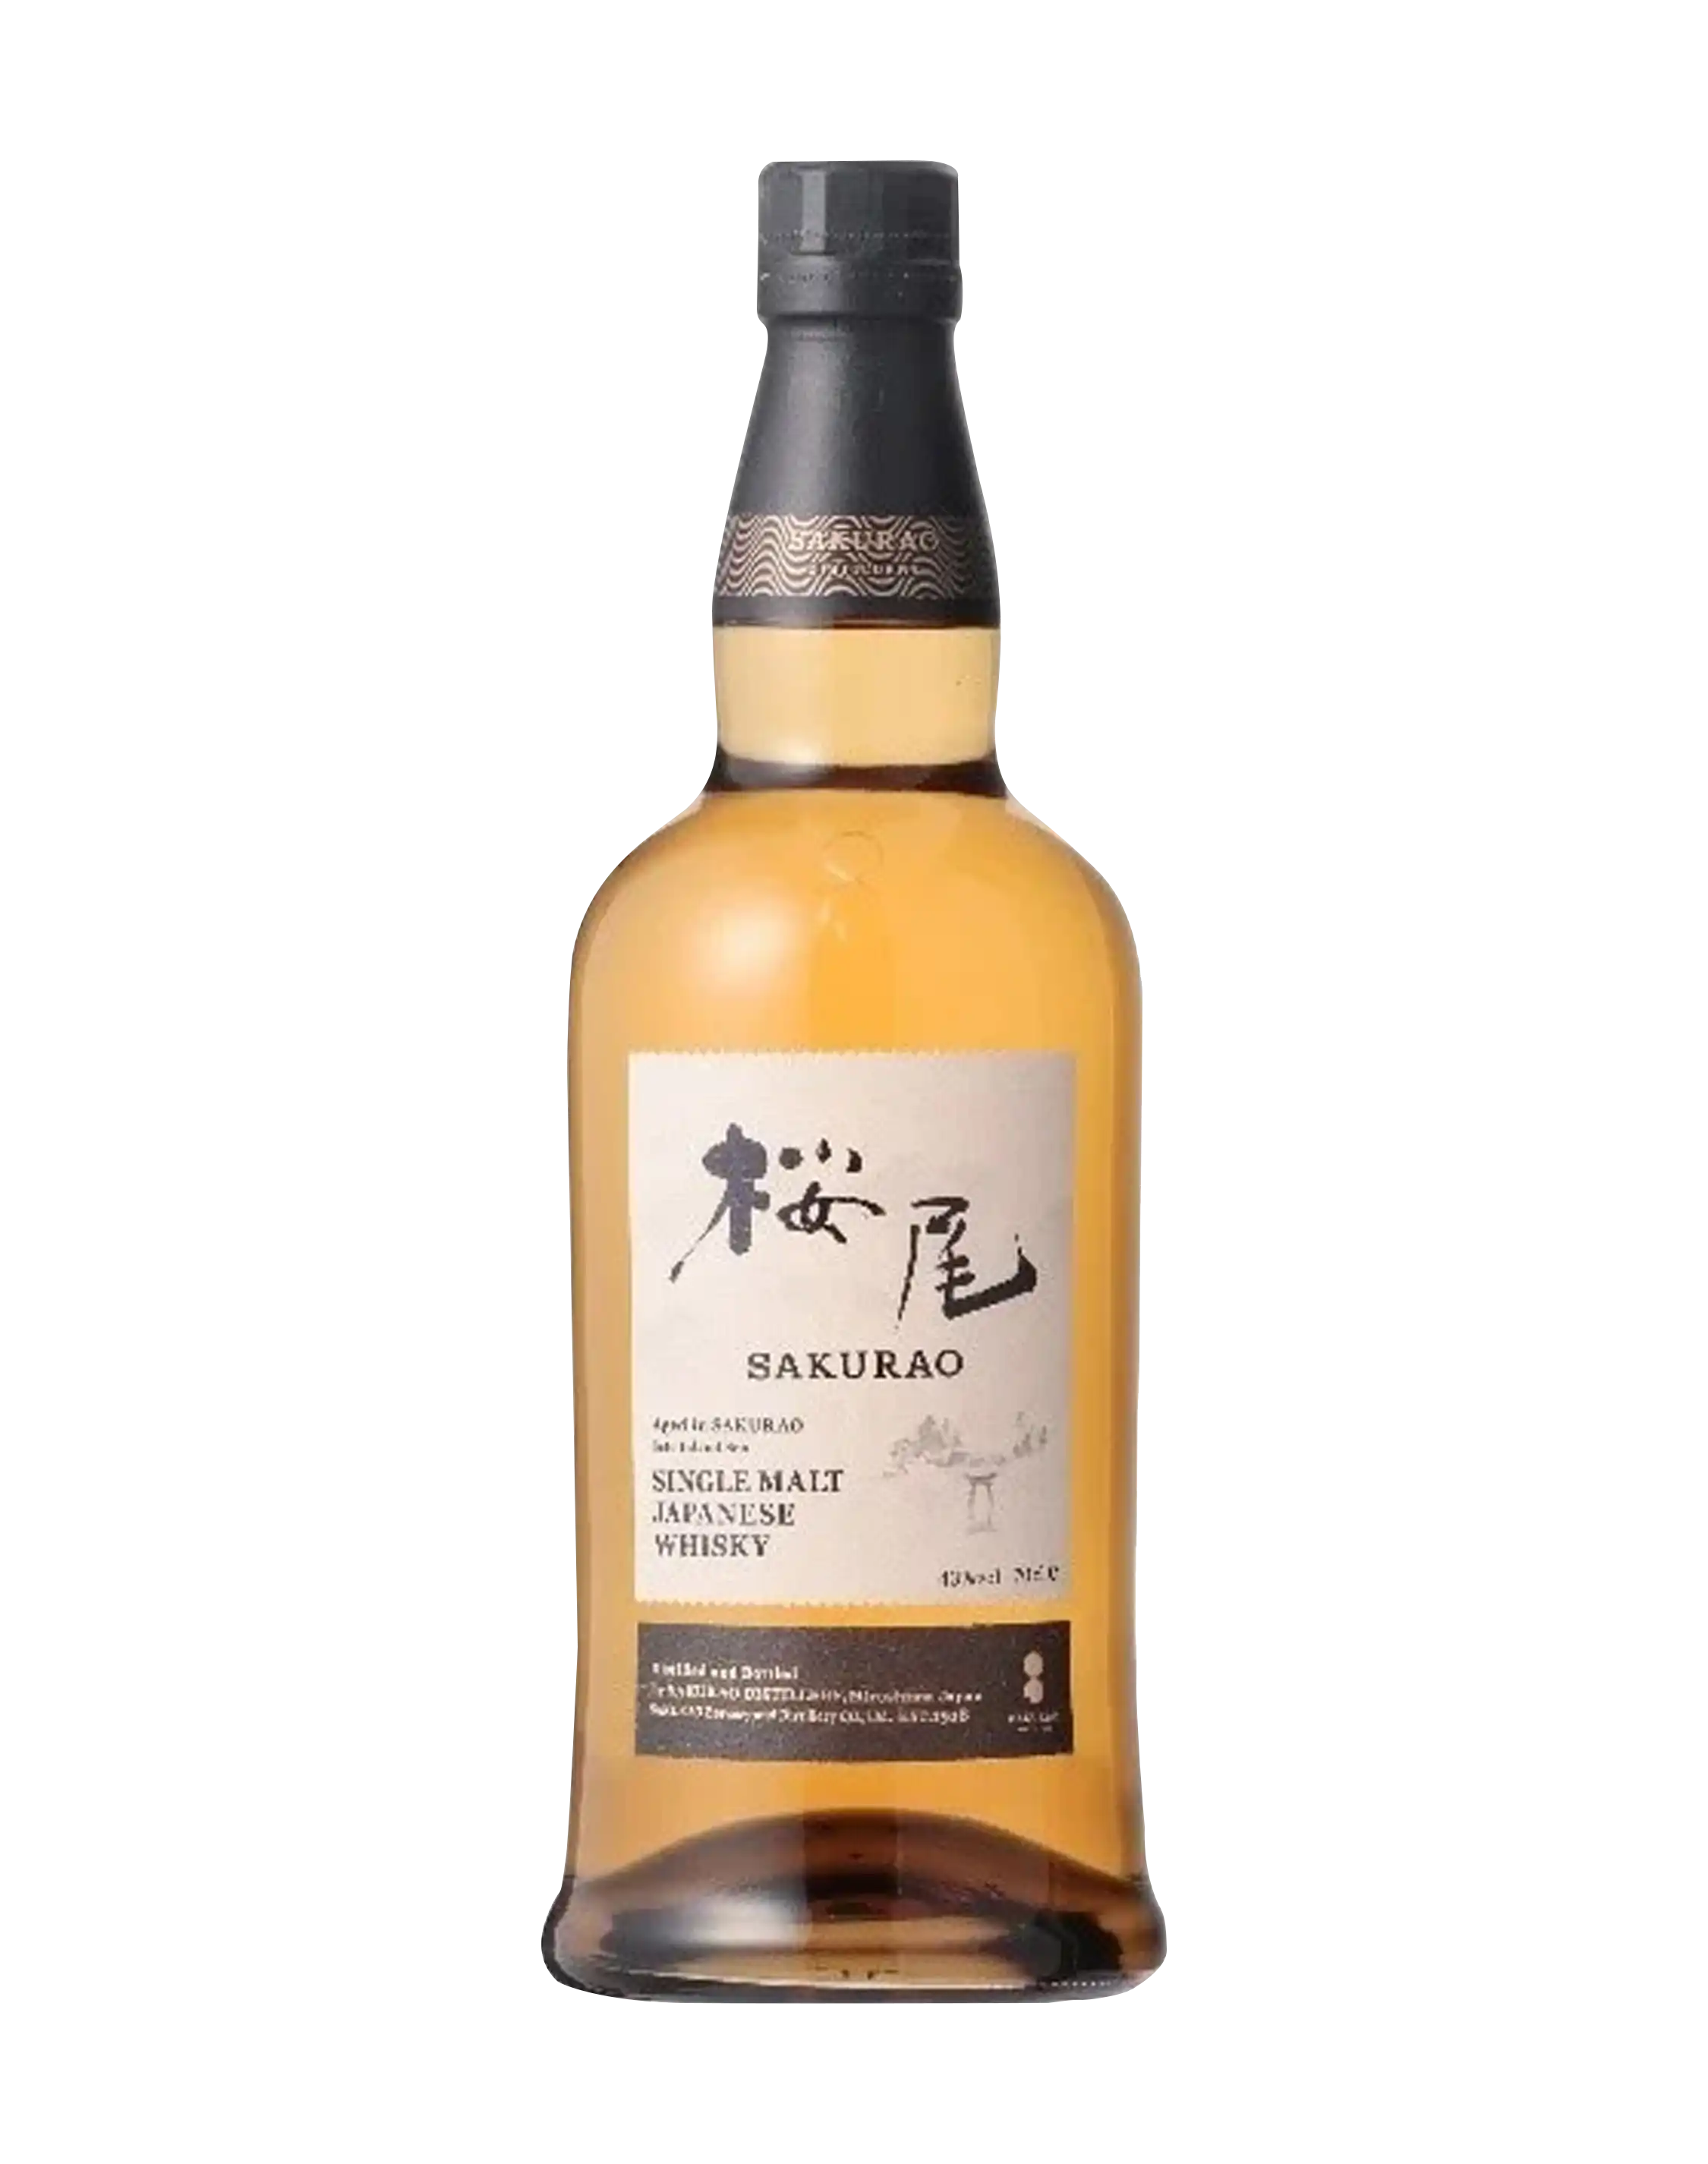 Single Malt Japanese Whisky Sakurao